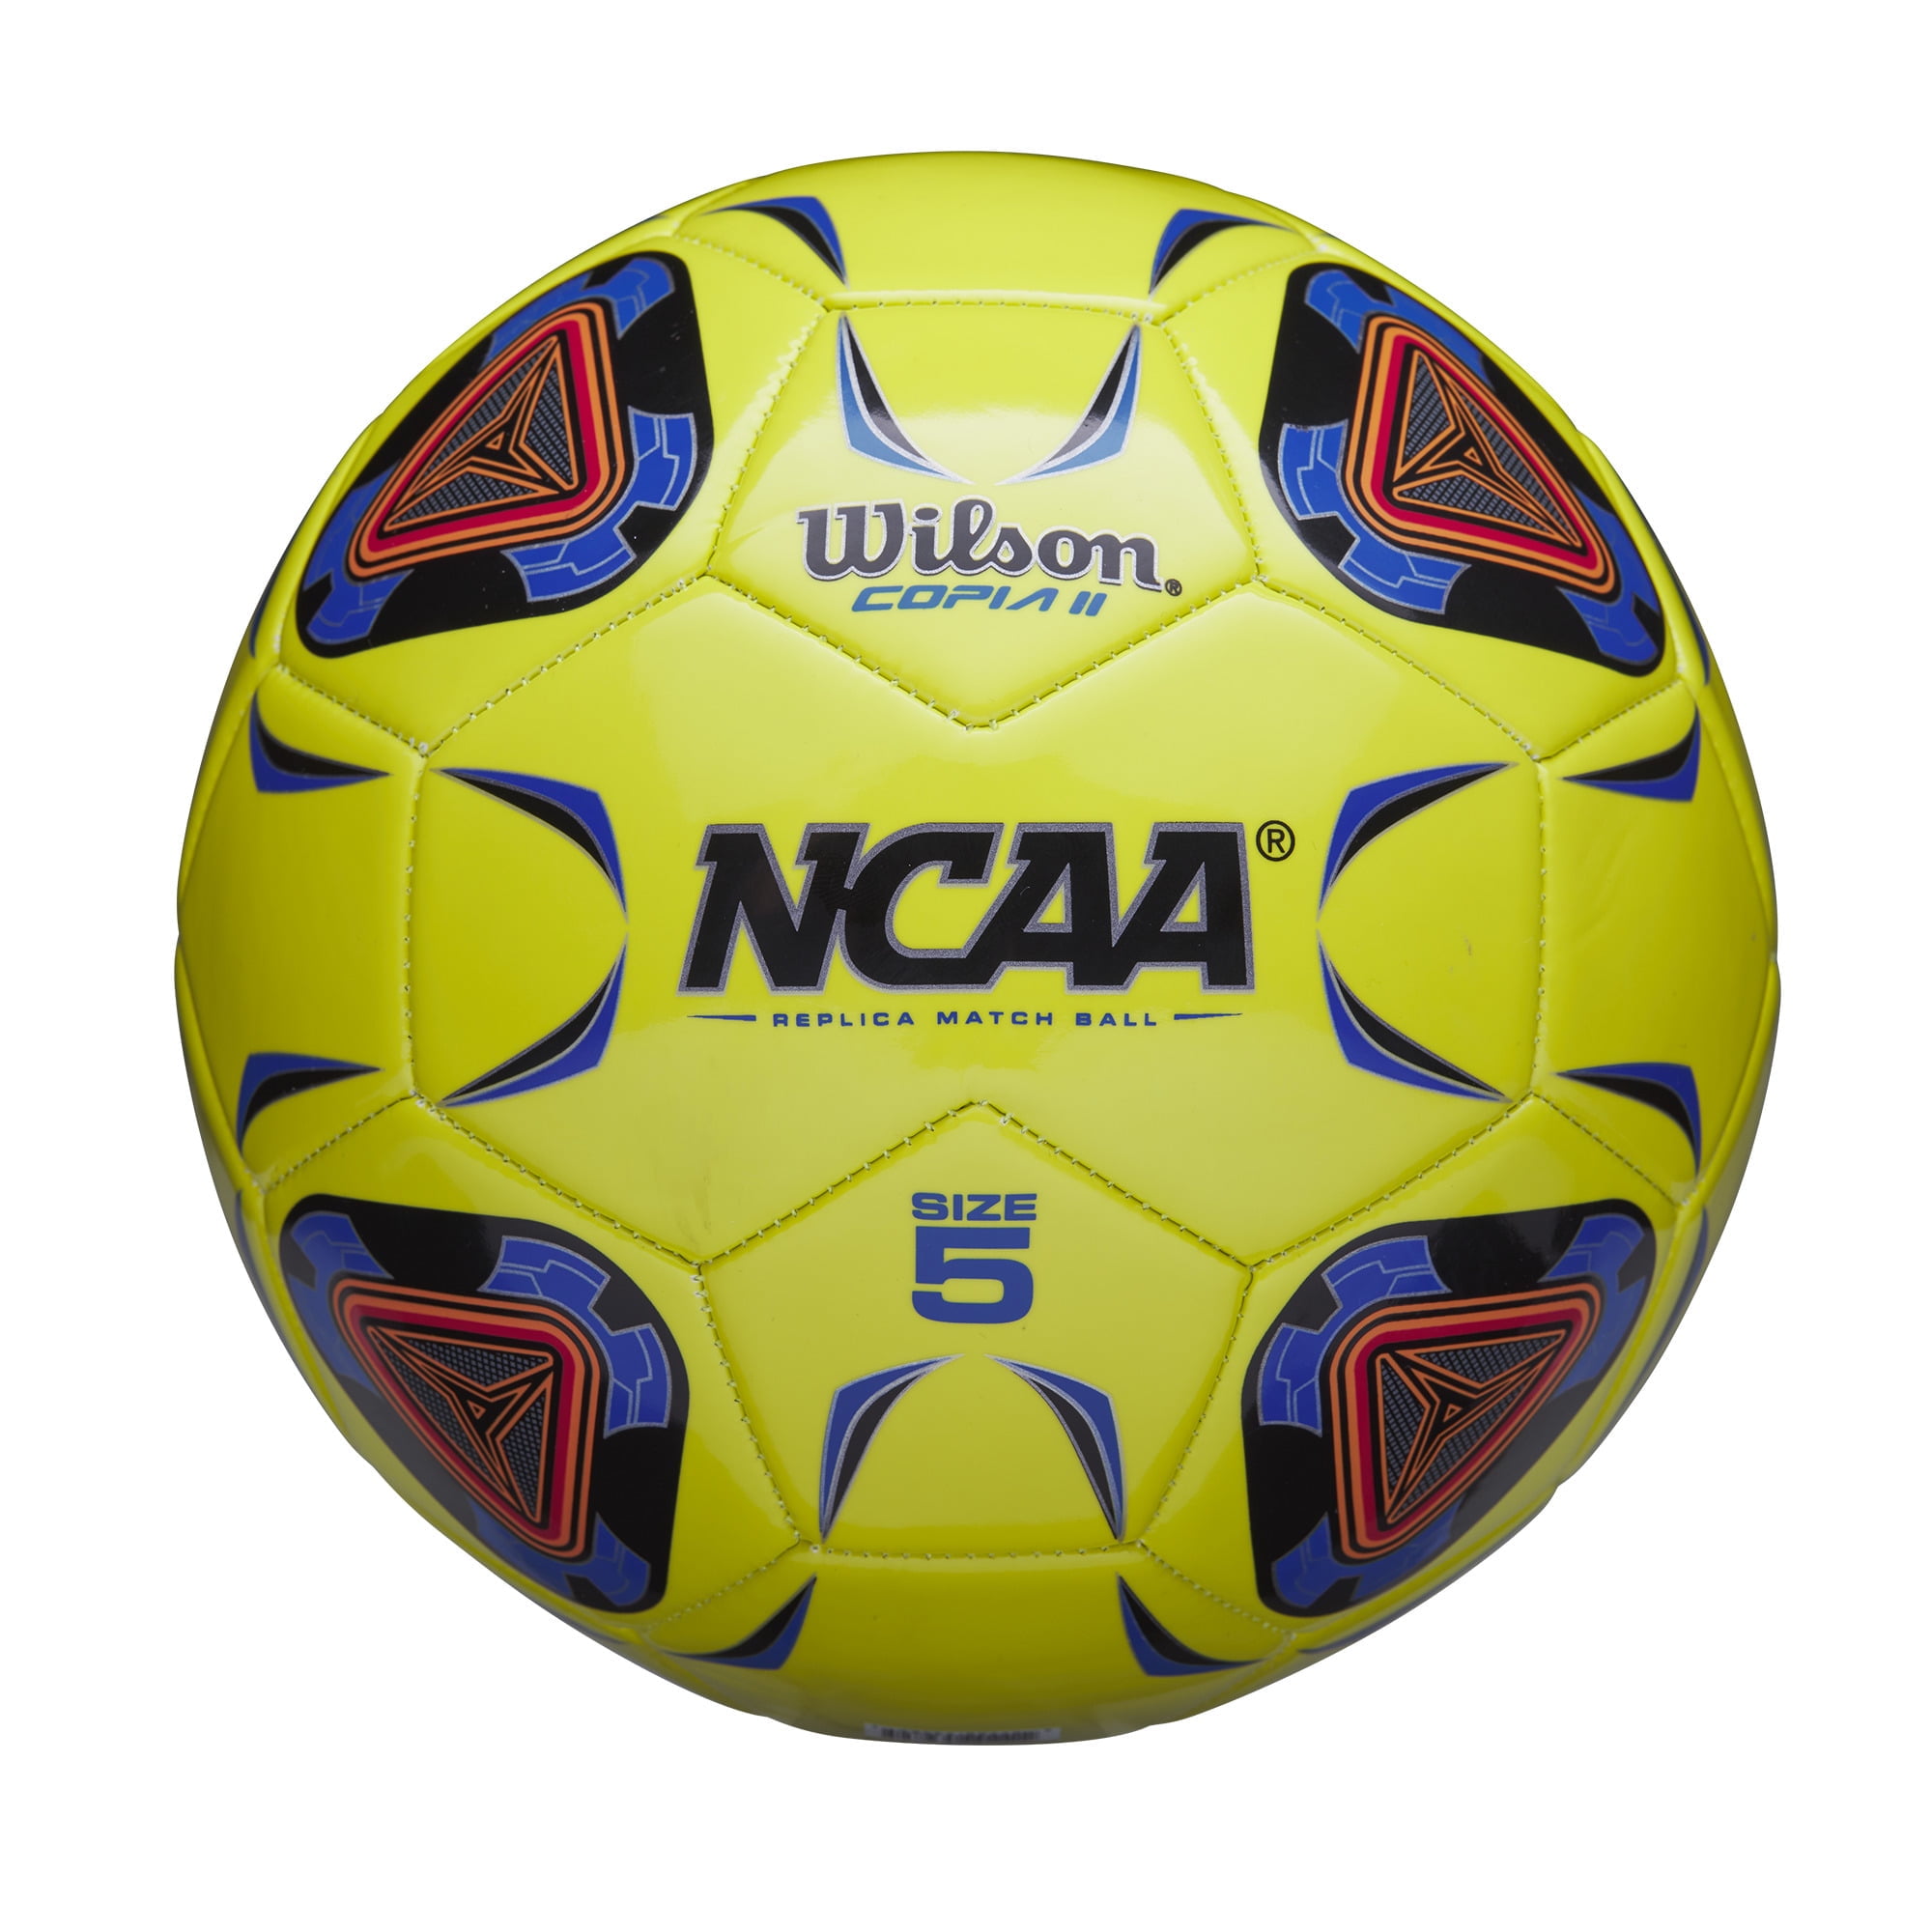 Wilson NCAA Copia II Soccer Ball, Size 5 - Optic Yellow